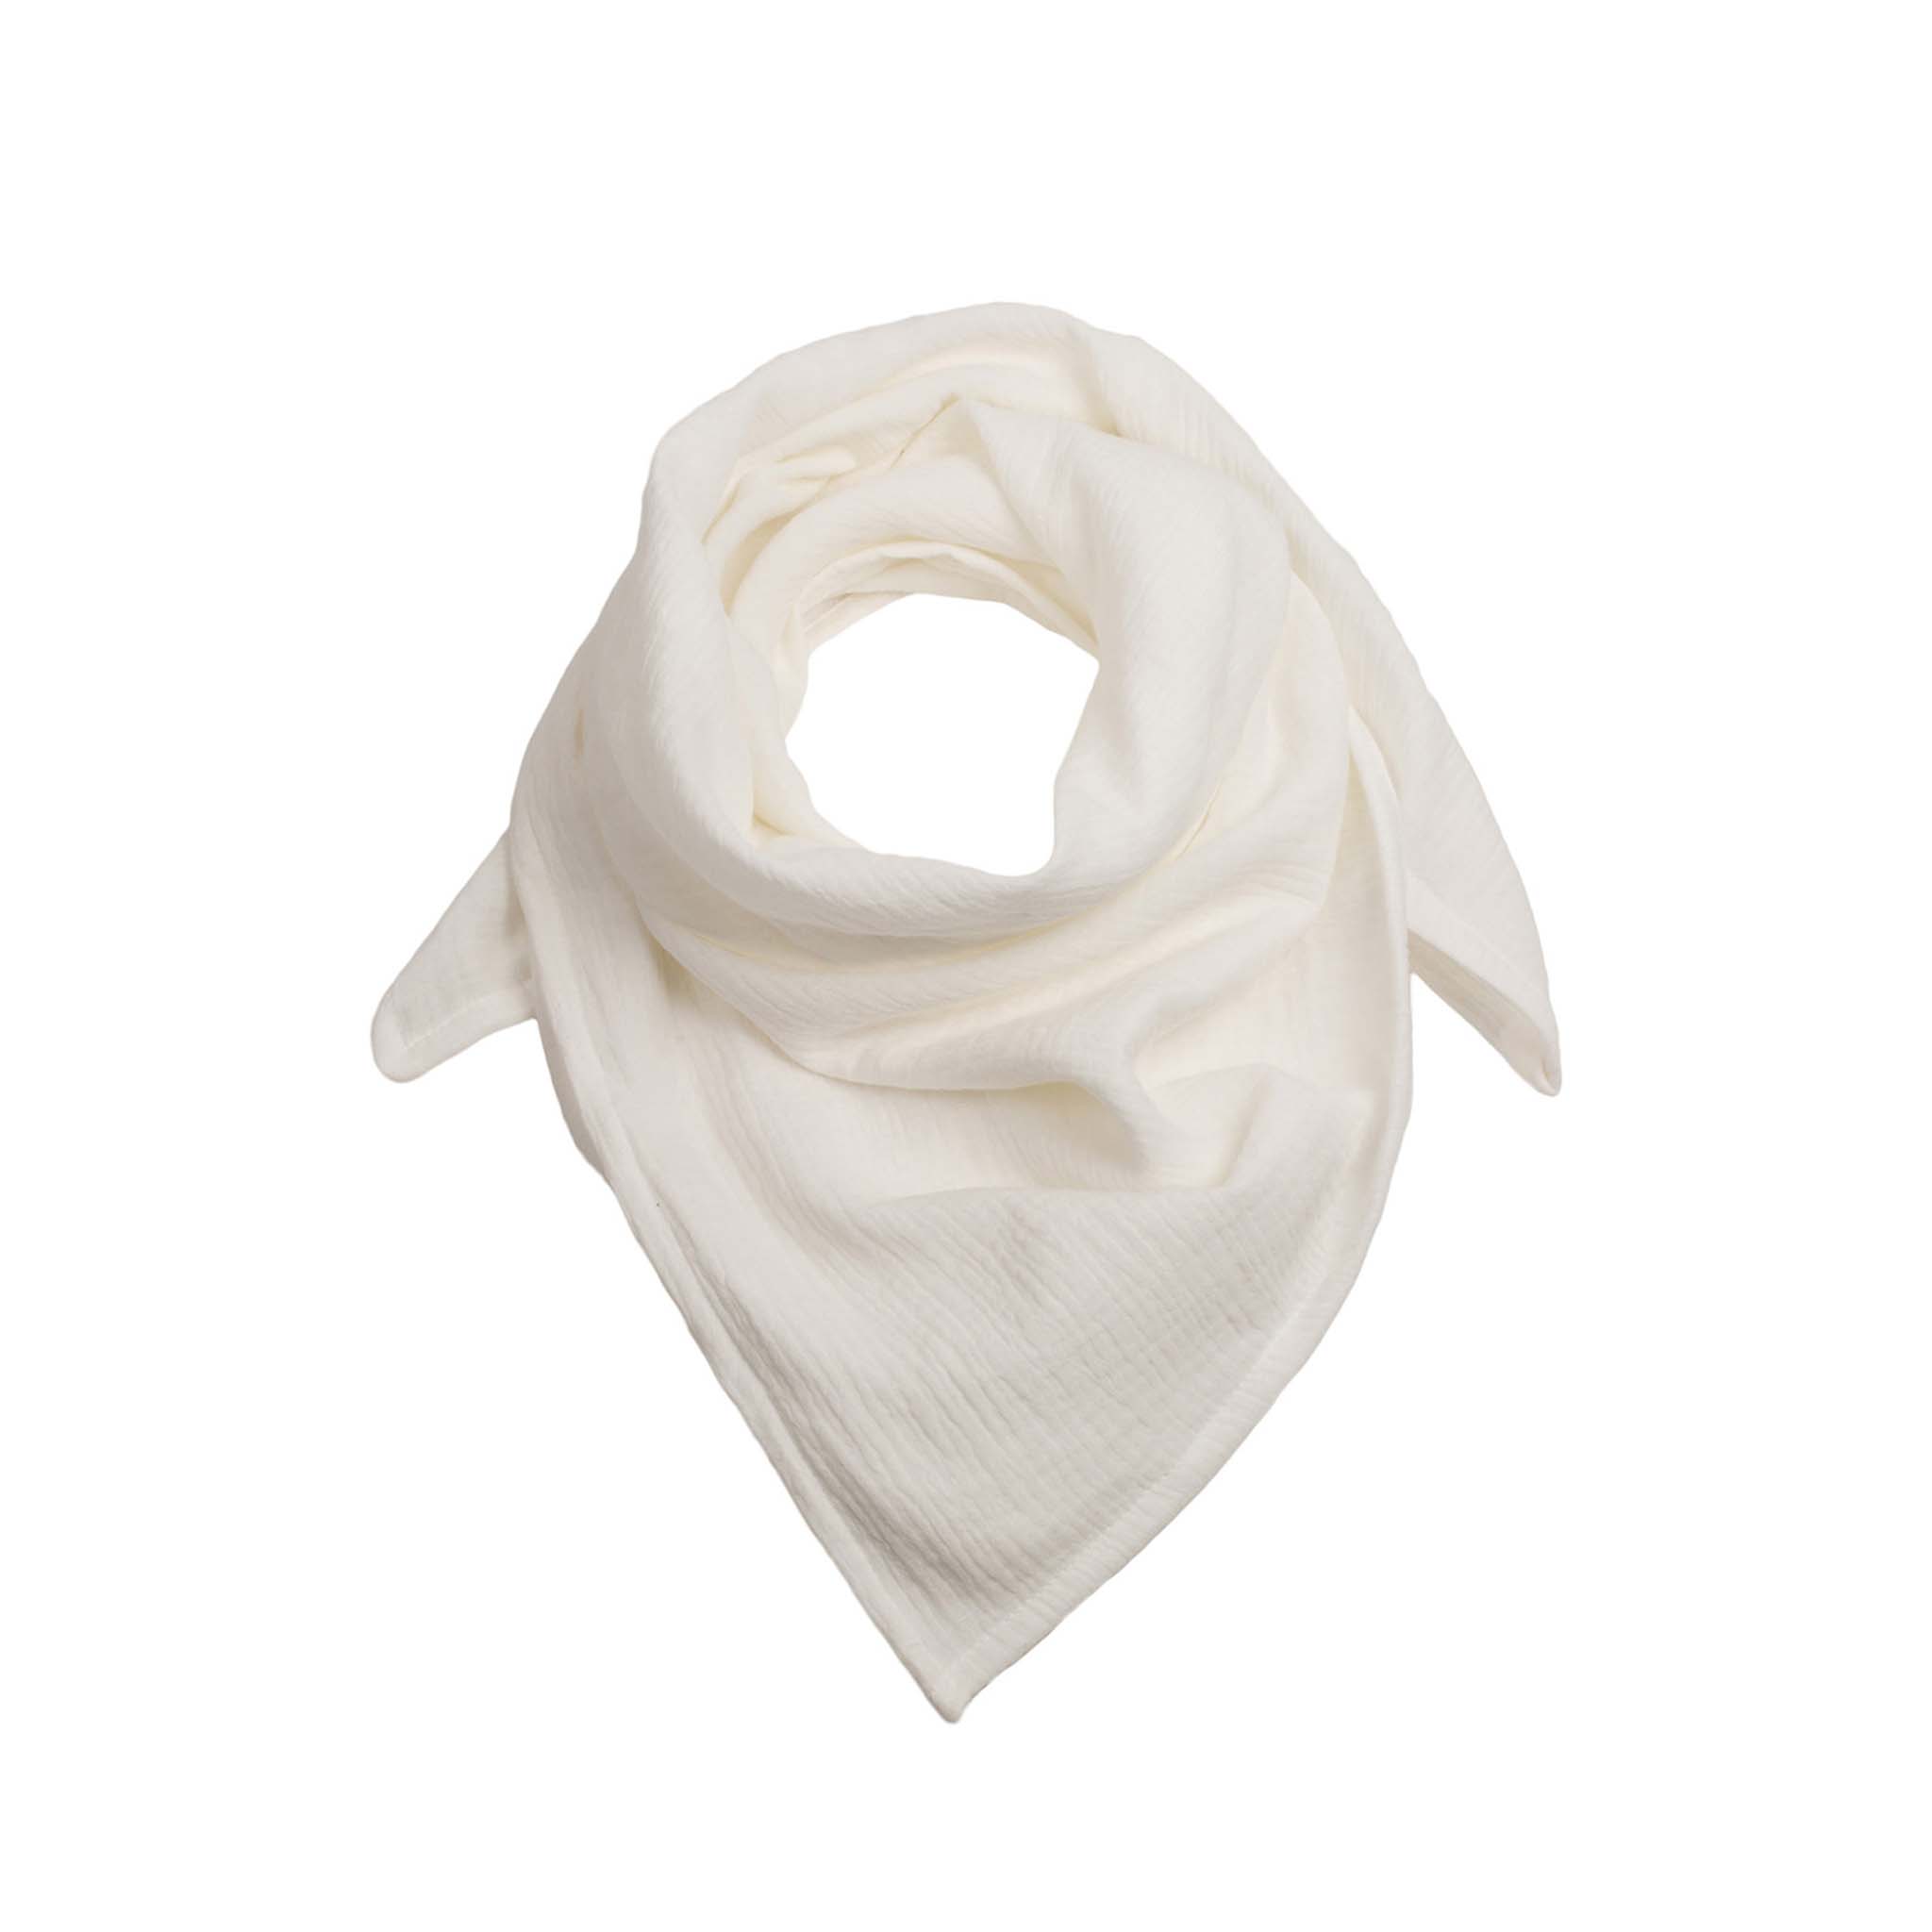 Musselin-Halstuch für Babies in der Farbe Off-White